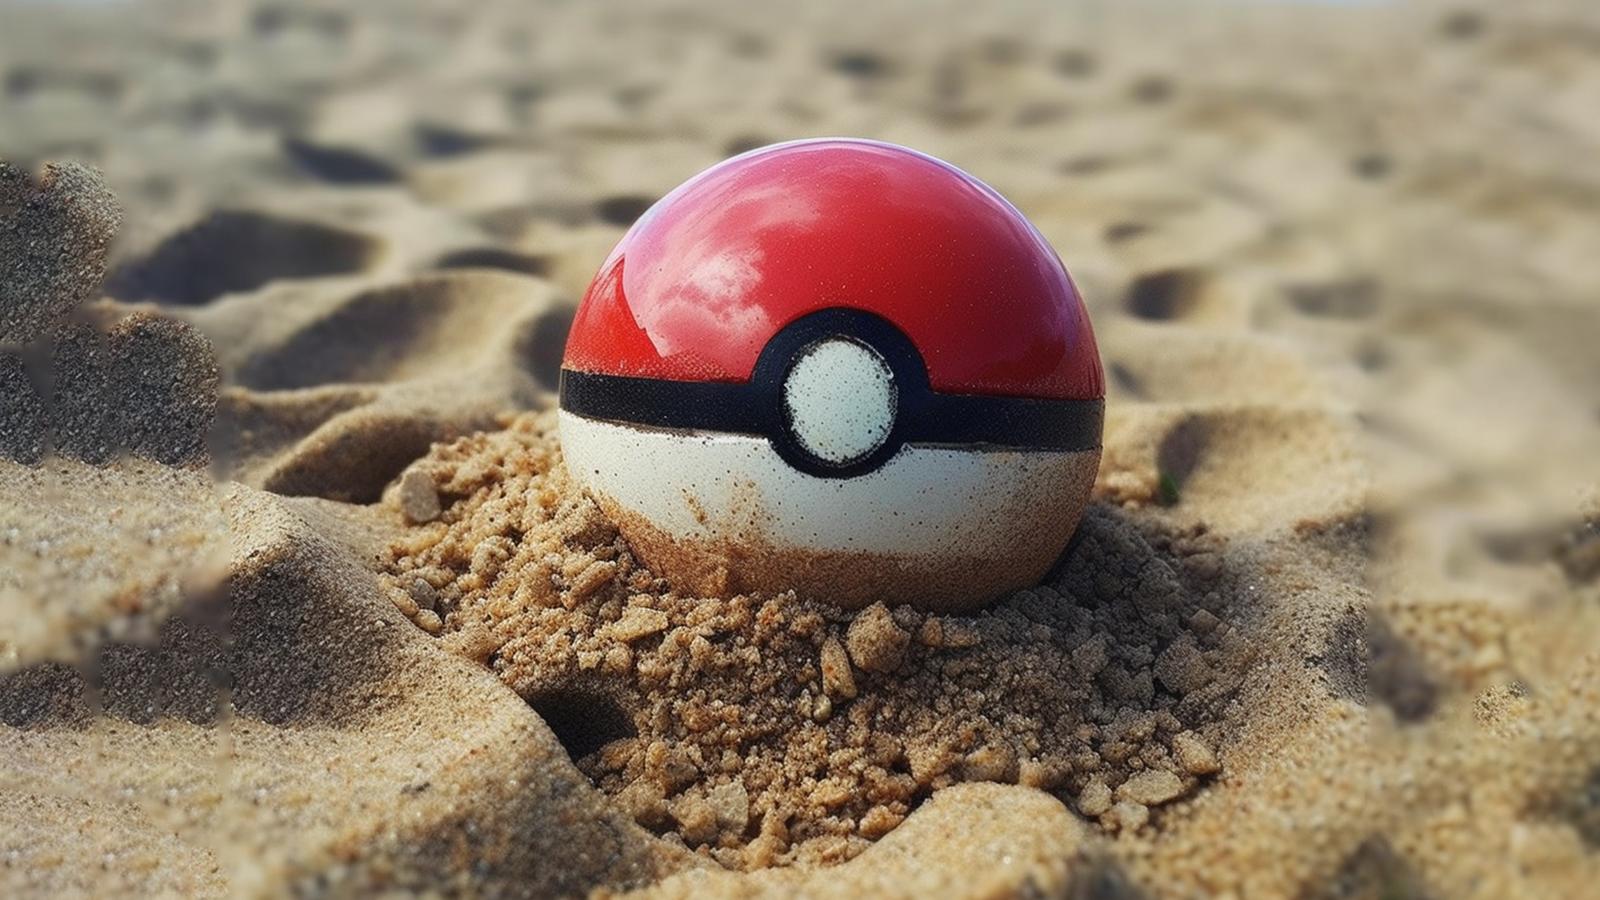 Pokeball left in sand